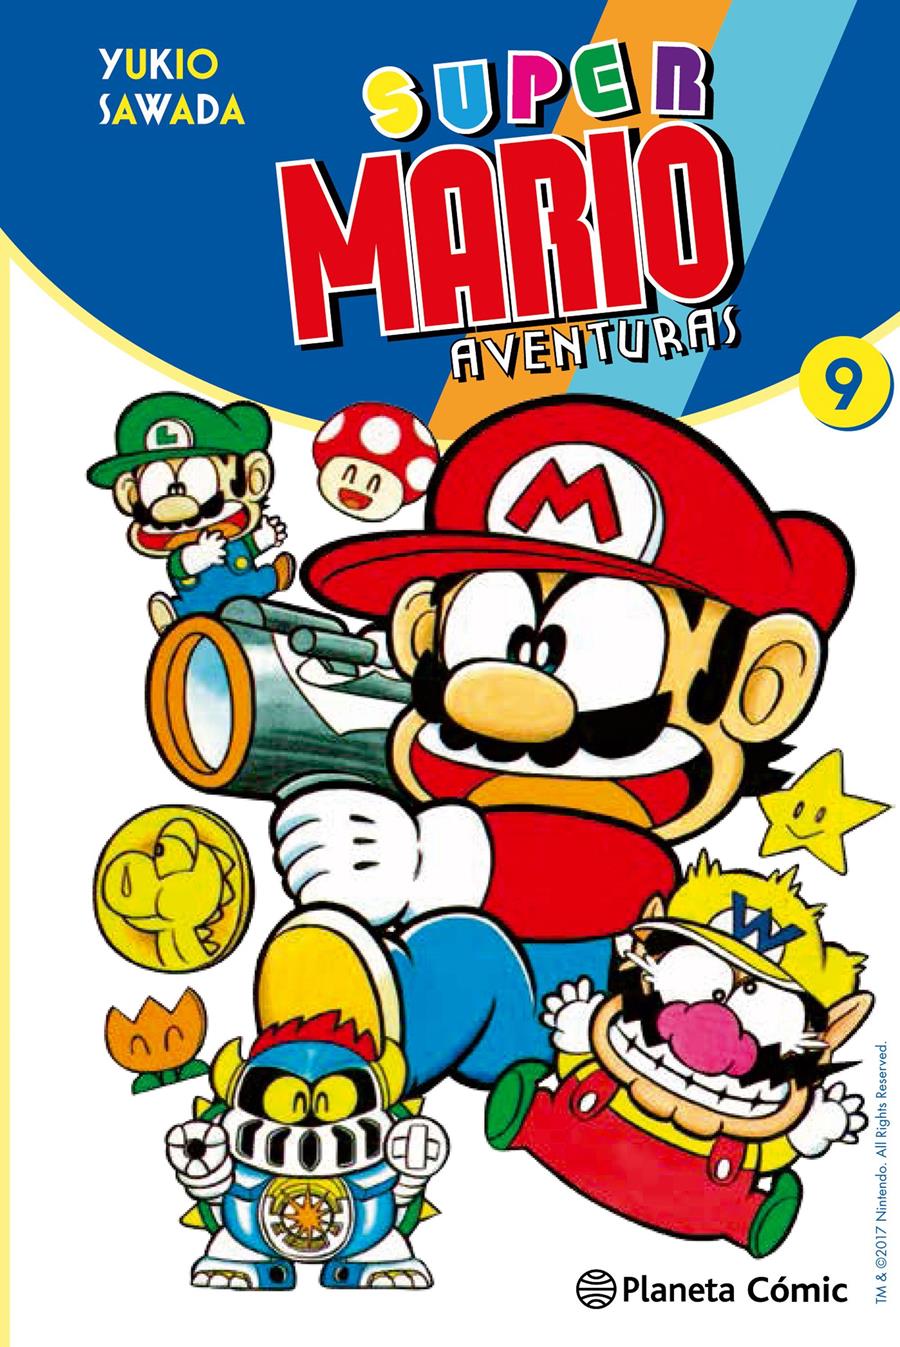 Super Mario nº 09 | N1017-PLA22 | Yukio Sawada | Terra de Còmic - Tu tienda de cómics online especializada en cómics, manga y merchandising